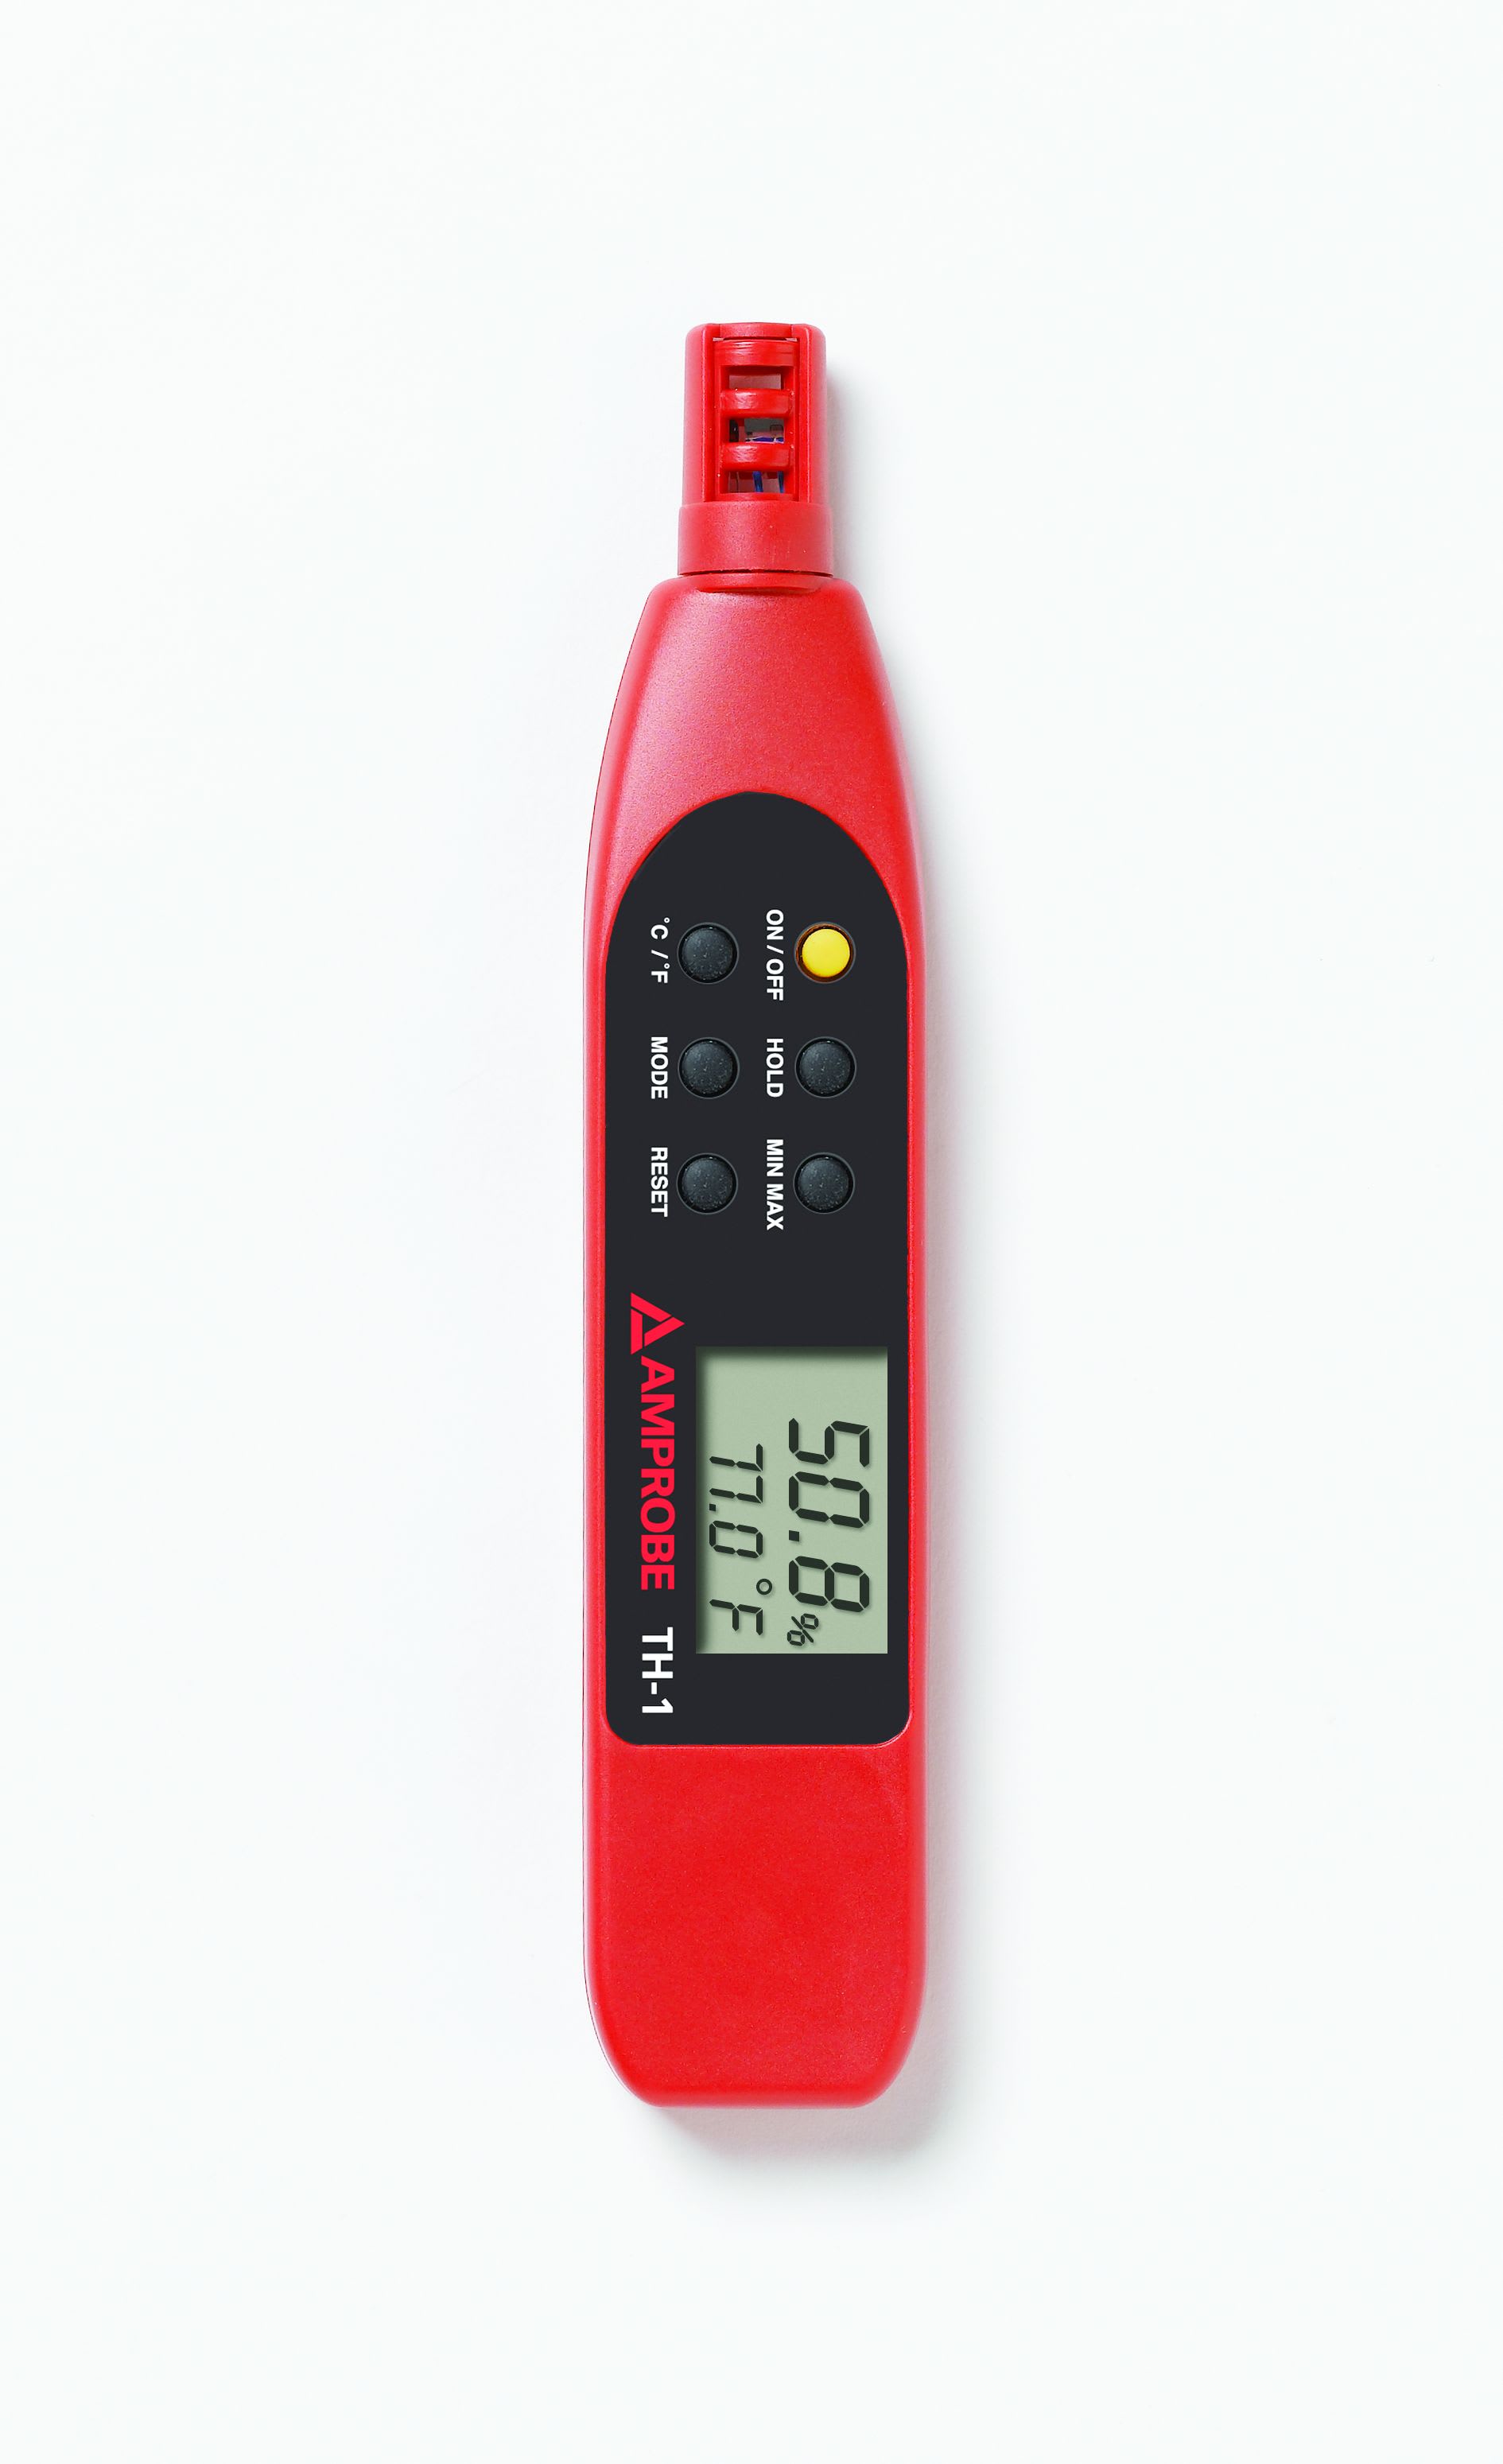 Fluke - TH-1 Hygromètre et thermomètre numérique, -20 à 50°C